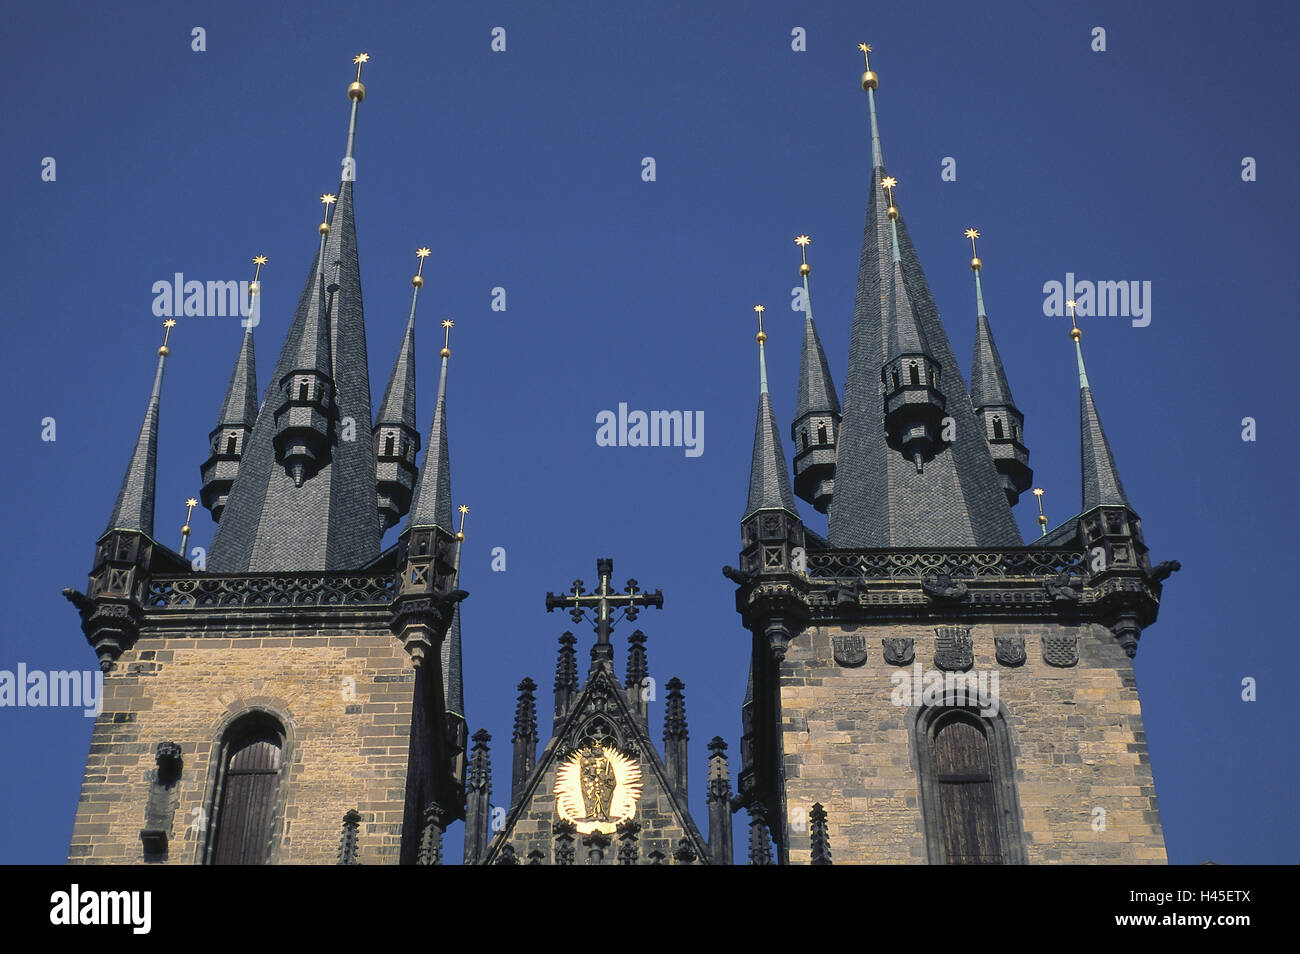 República Checa, Praga Teynkirche, campanarios, iglesia, iglesia, religión, fe, estructura, arquitectura, torres, campanarios, el cielo azul, despejado, estilo arquitectónico gótico tardío, Foto de stock